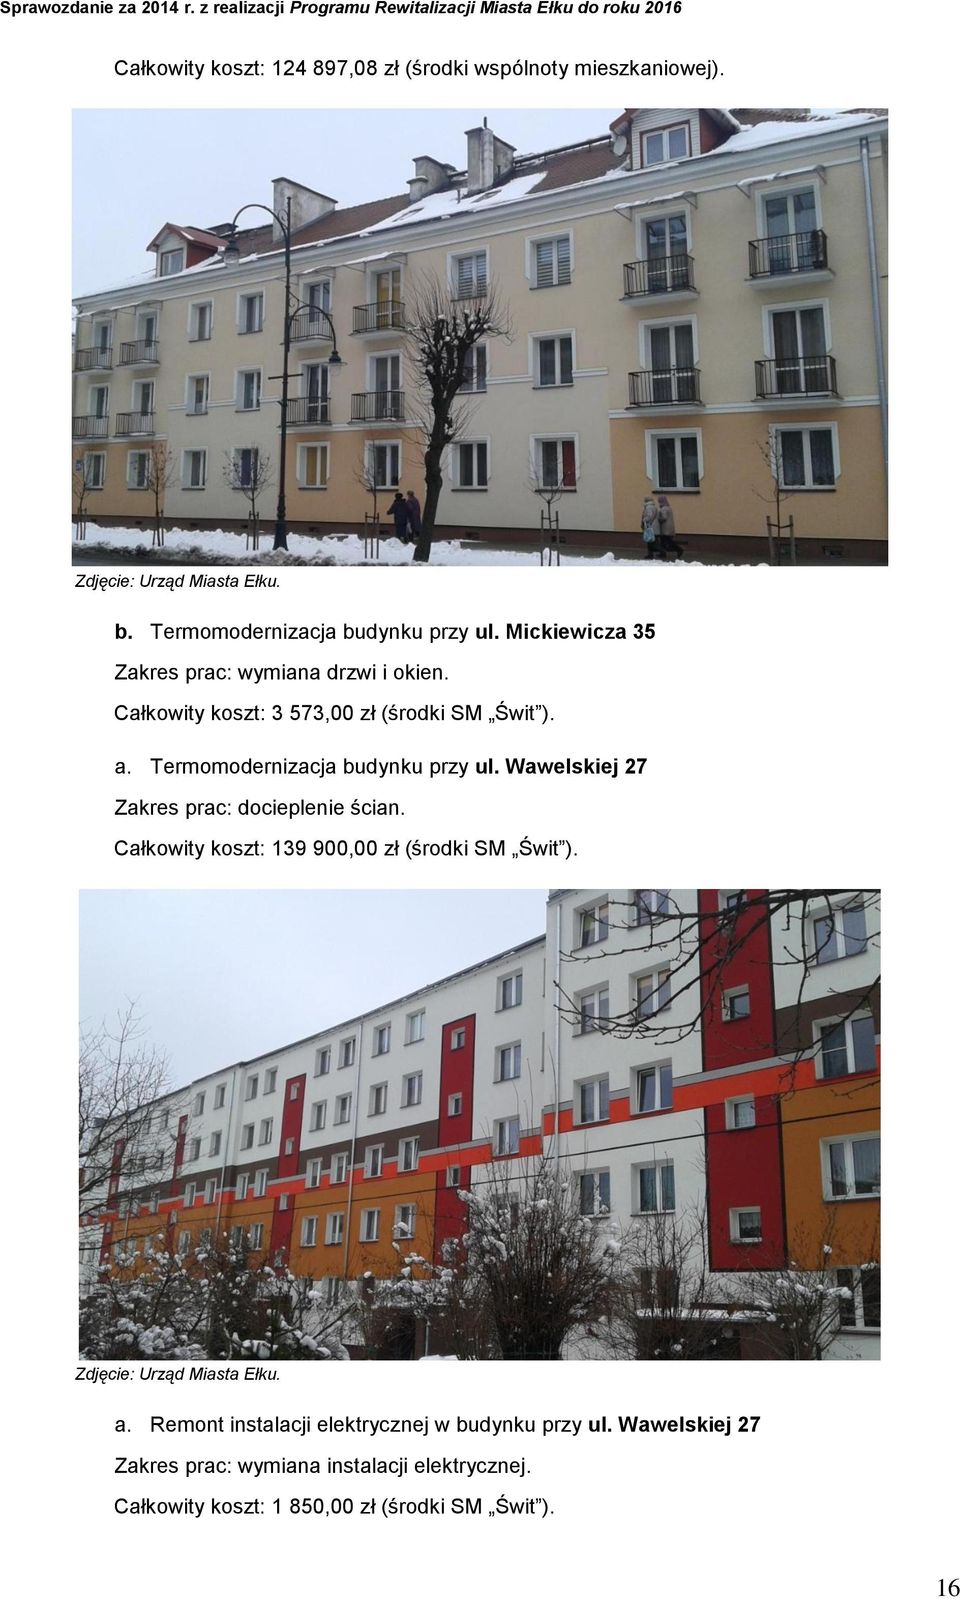 Termomodernizacja budynku przy ul. Wawelskiej 27 Zakres prac: docieplenie ścian.